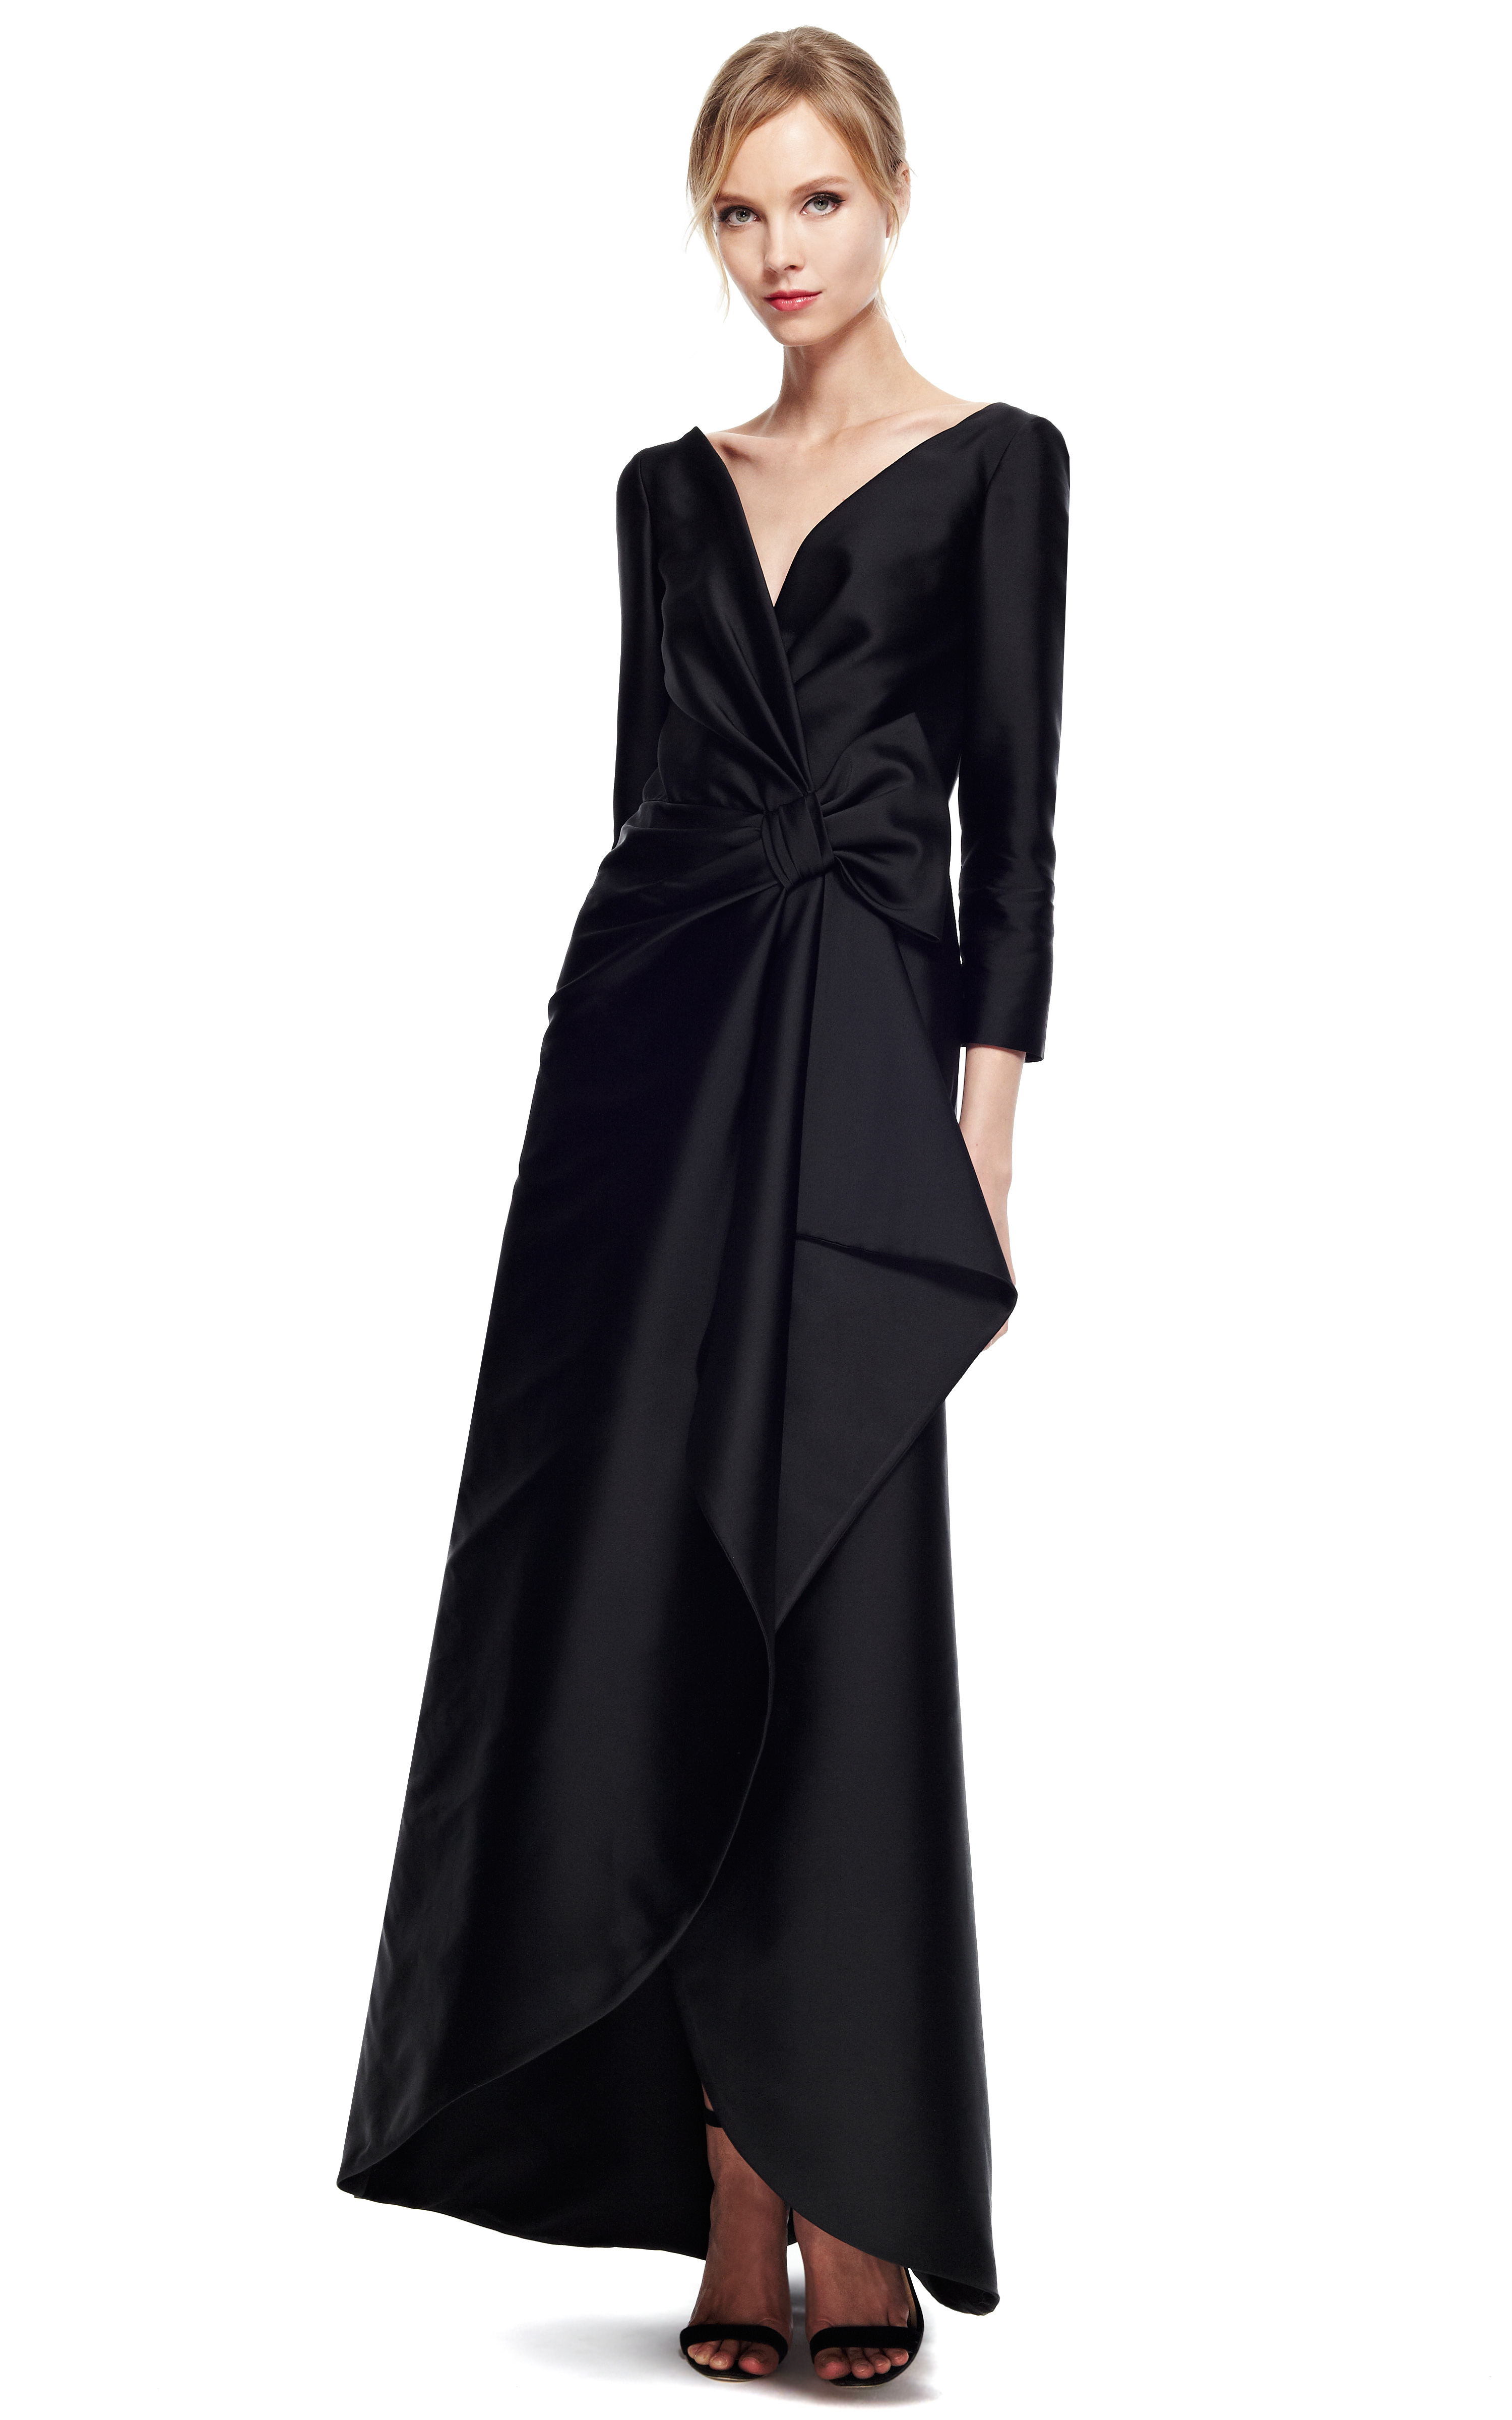 Alberta Ferretti Duchess Satin Gown in Black - Lyst